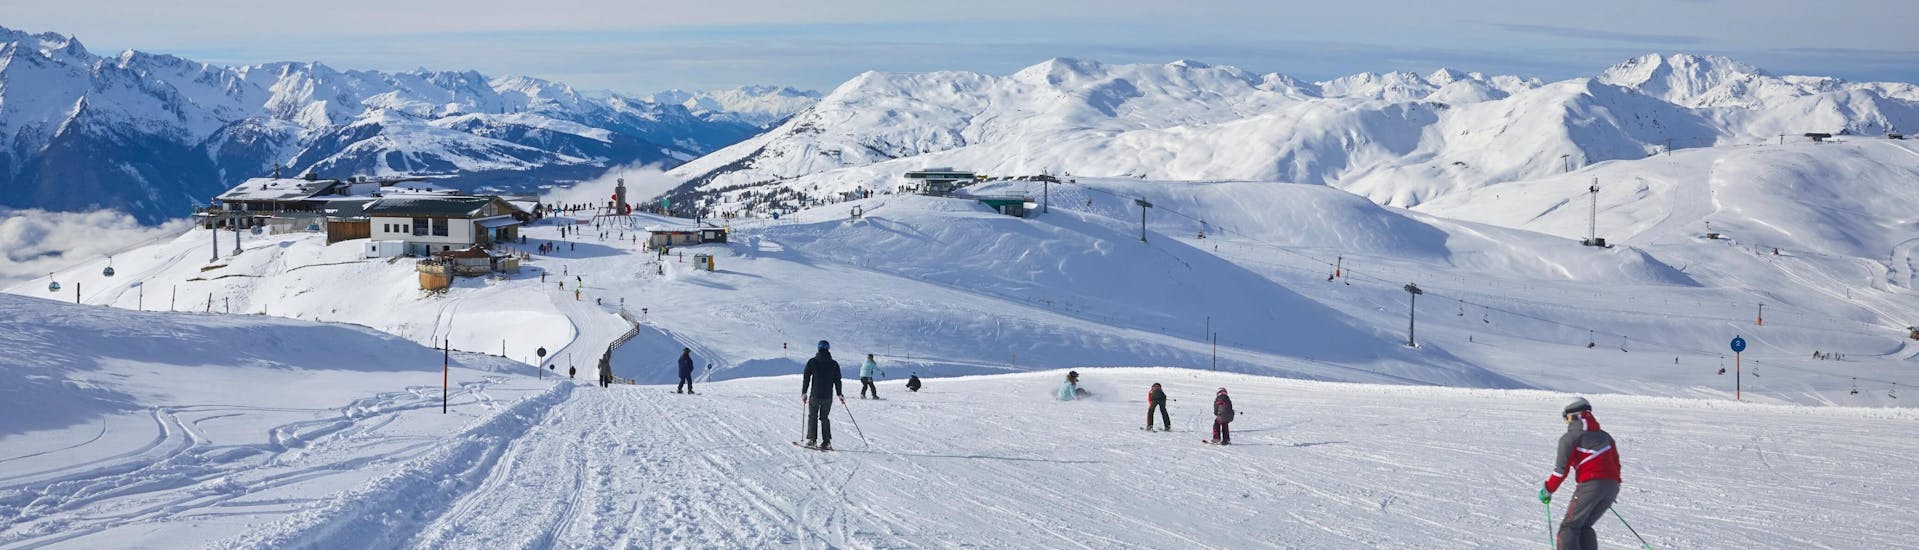 Ausblick auf die sonnige Berglandschaft beim Skifahren lernen mit den Skischulen in Bramberg am Wildkogel.